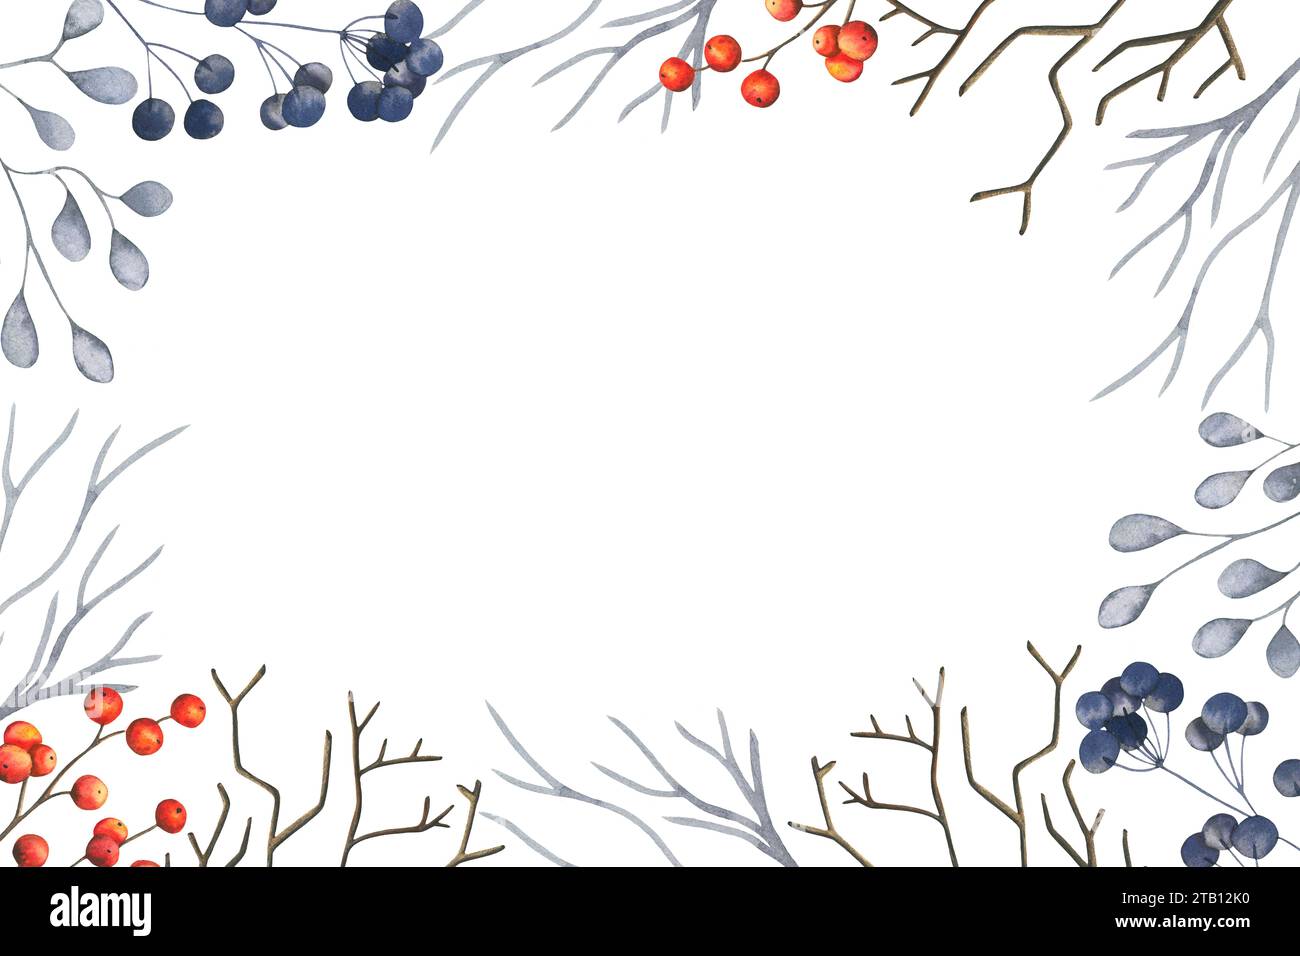 Cadre horizontal aquarelle d'hiver avec des branches abstraites avec des baies rouges et bleues. Collection botanique d'herbes. Illustration dessinée à la main isolée Banque D'Images